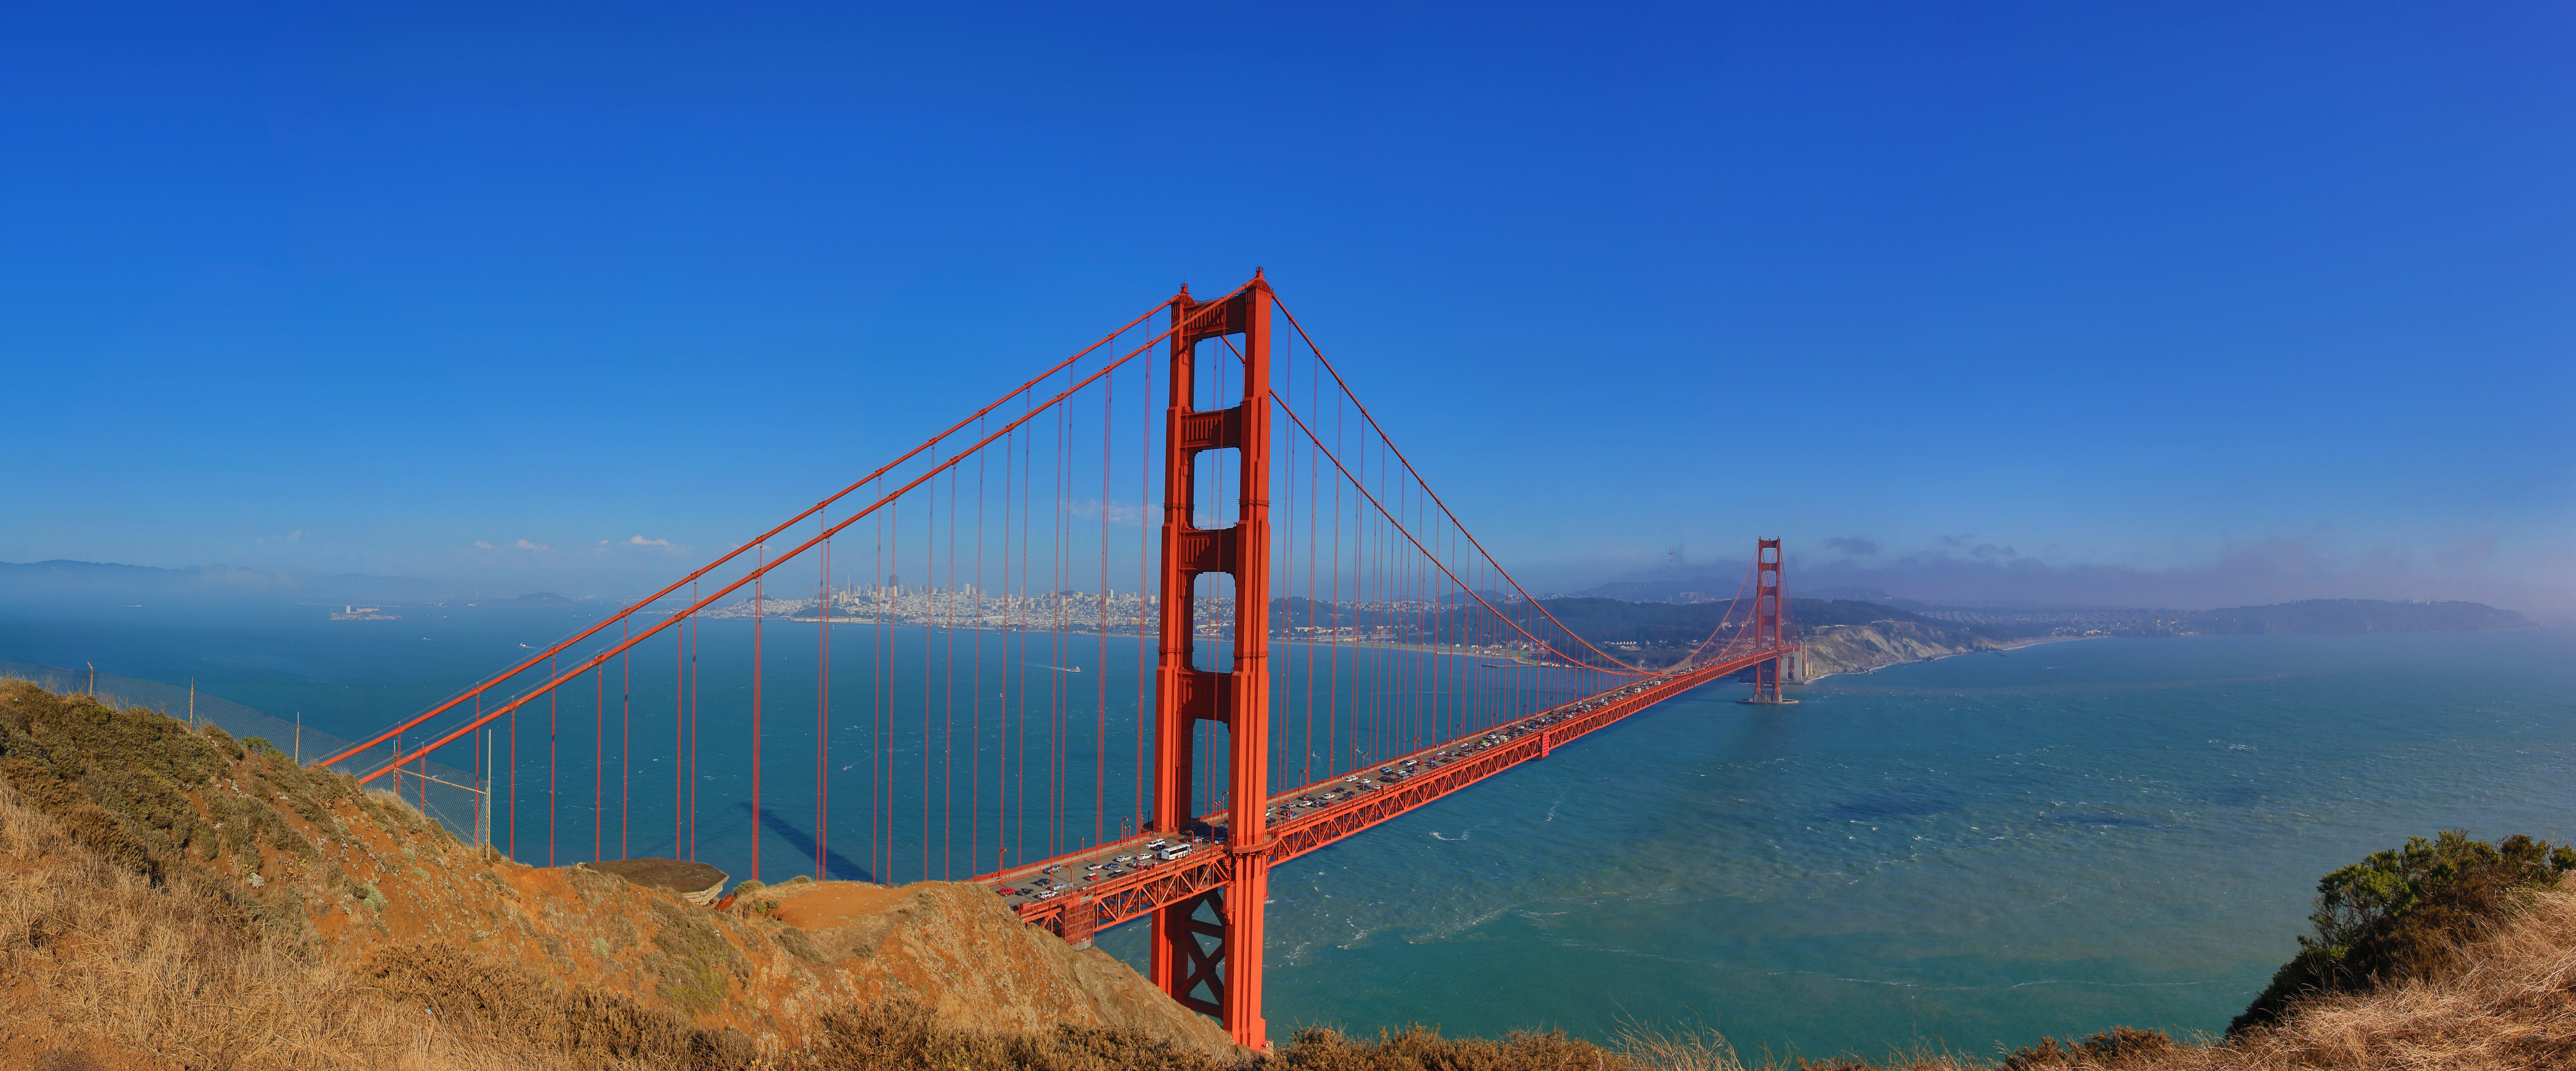 Man Made Golden Gate 12000x4987